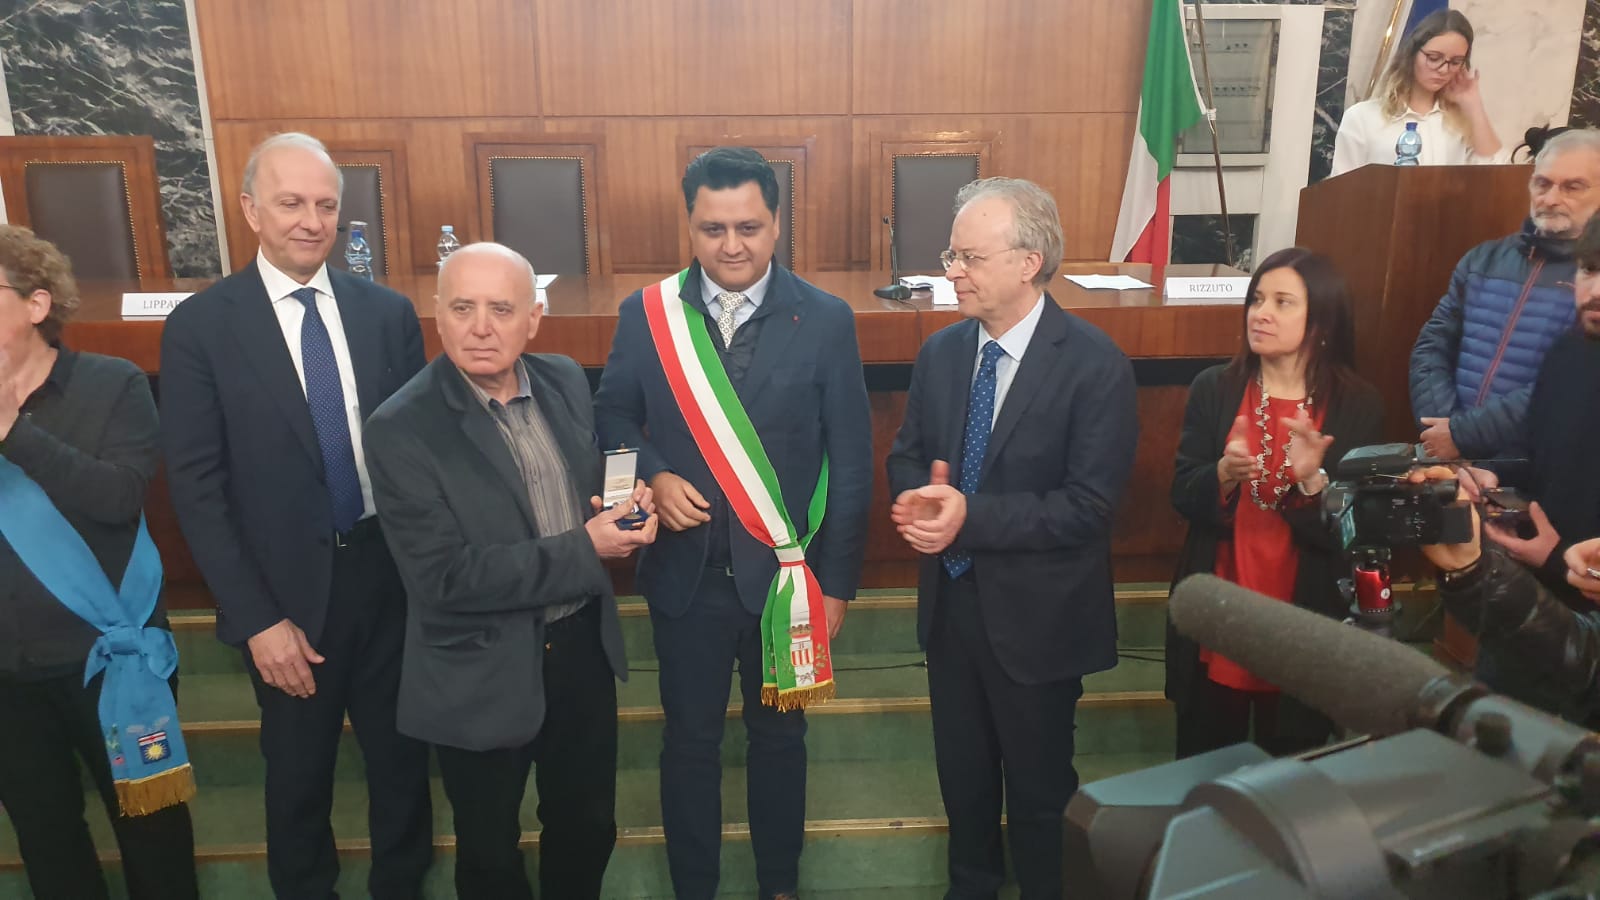 Il Prefetto di Milano ha consegnato la Medaglia d’Onore a un cittadino ...